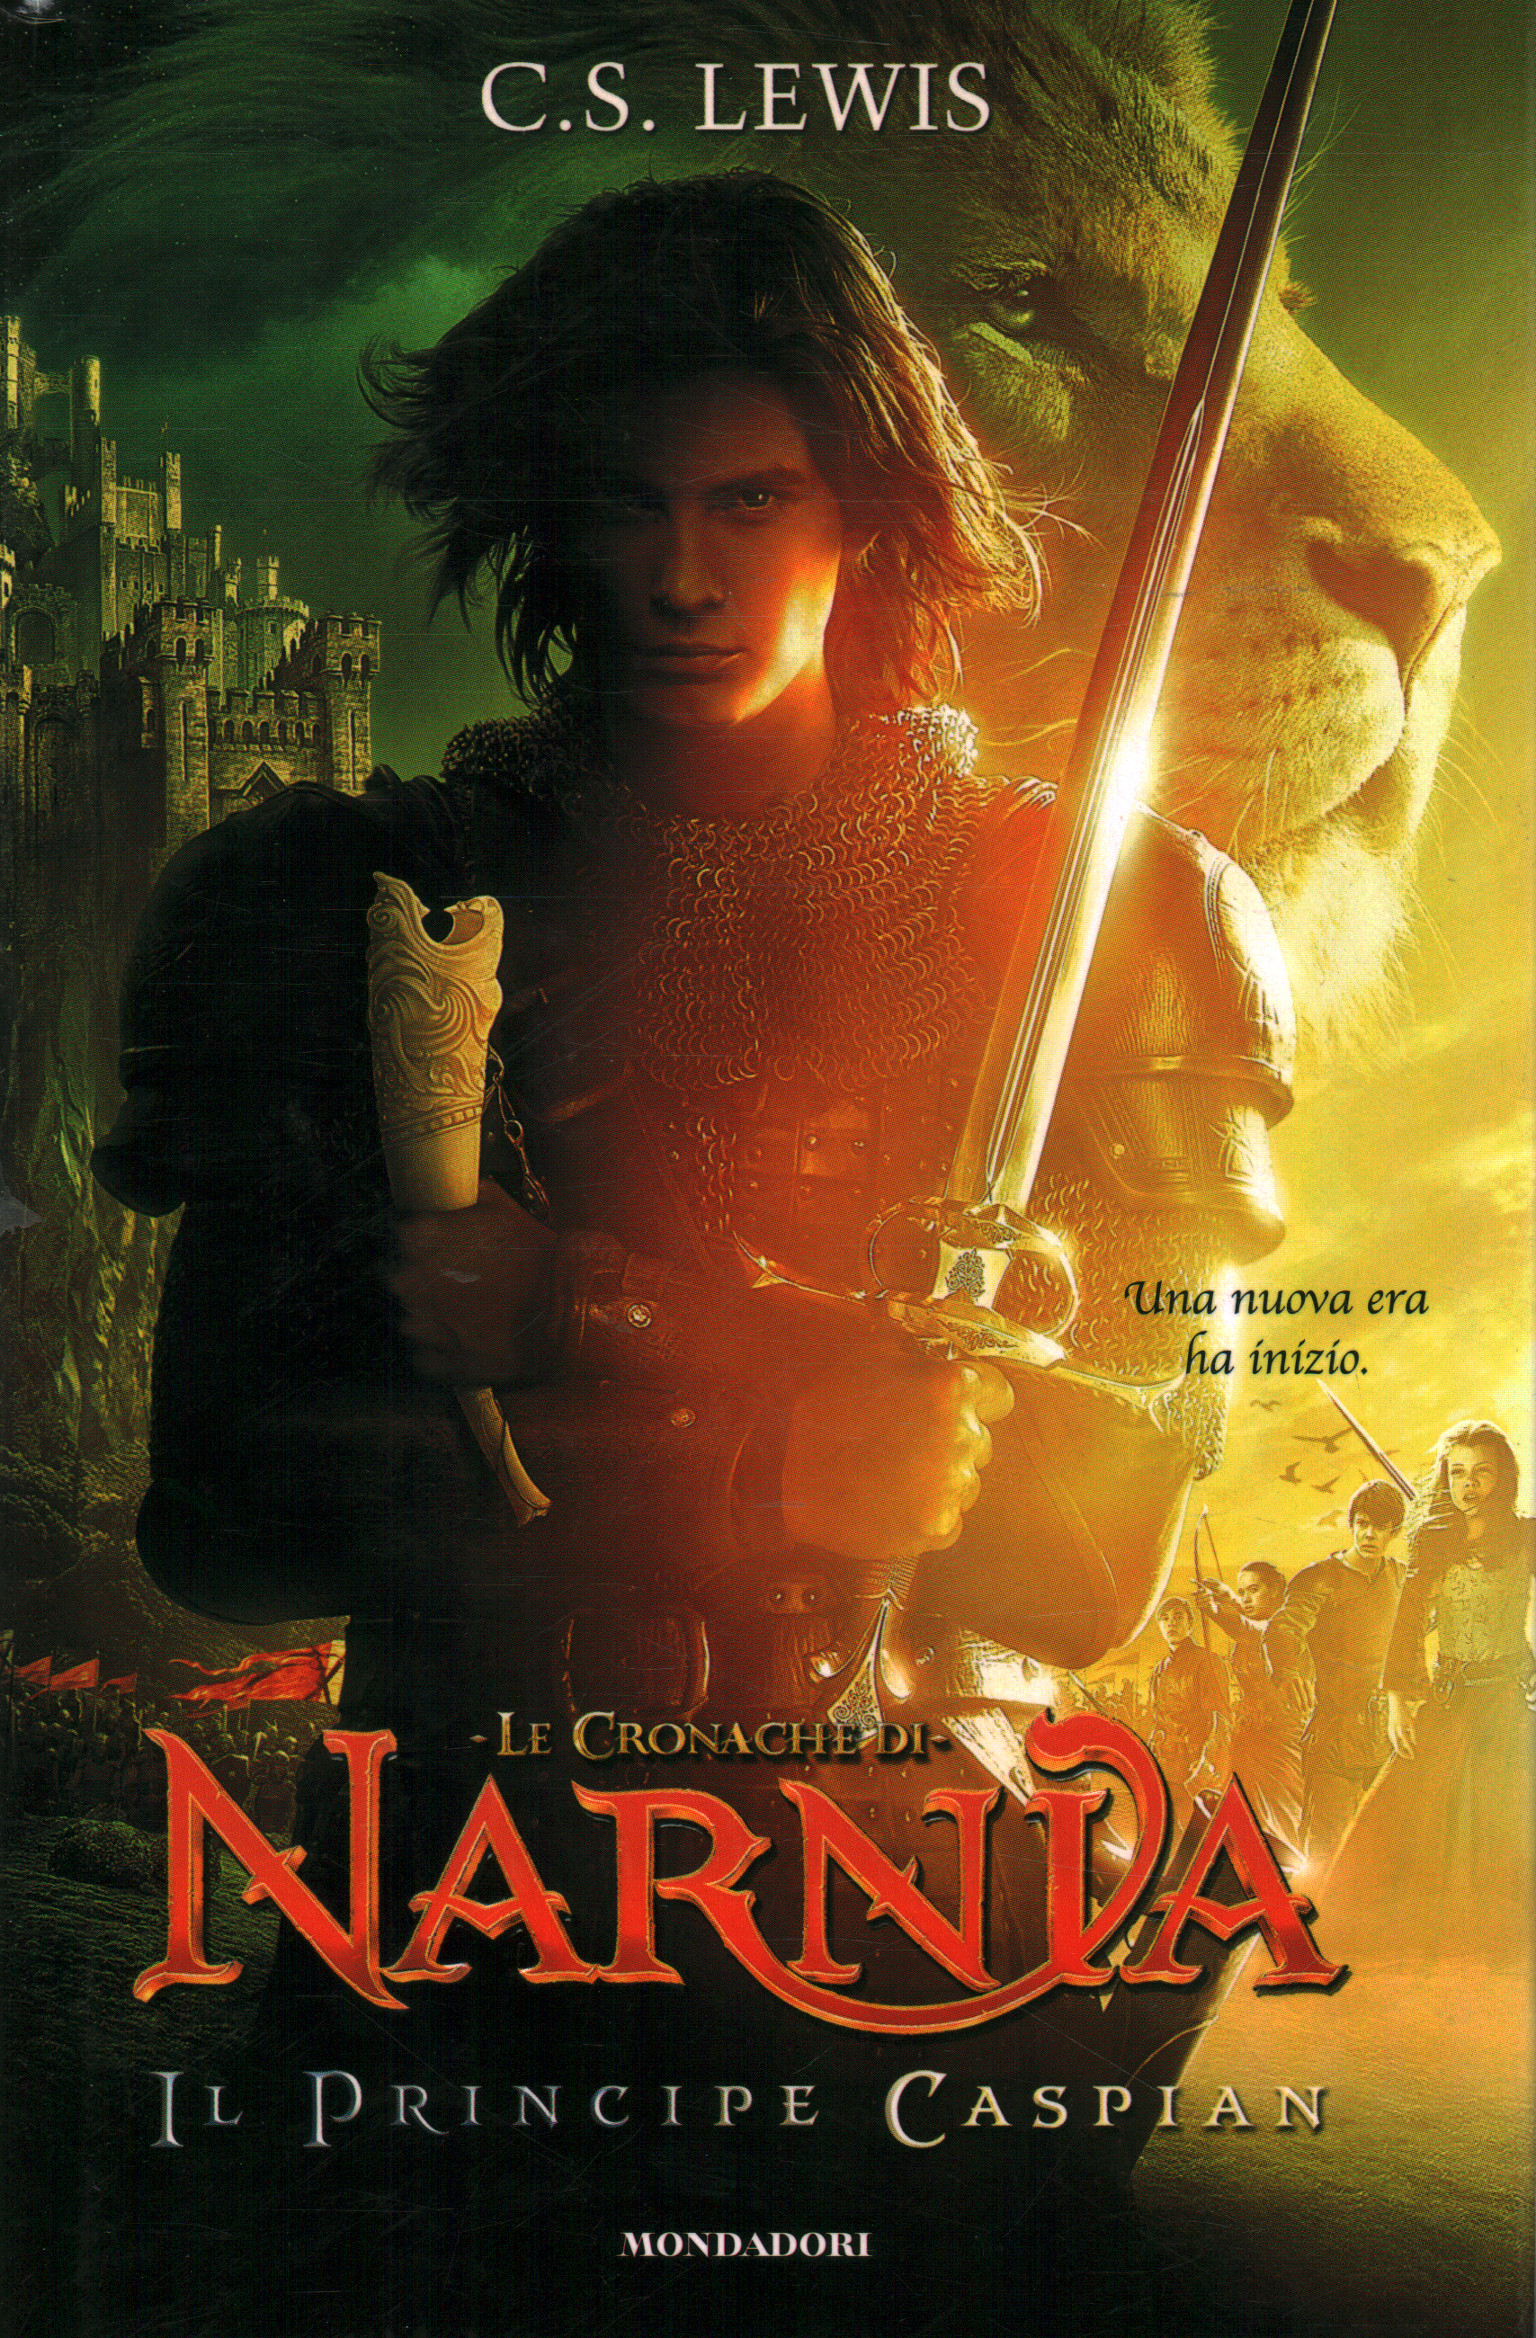 Las Crónicas de Narnia - Príncipe Caspian, C.S. Luis